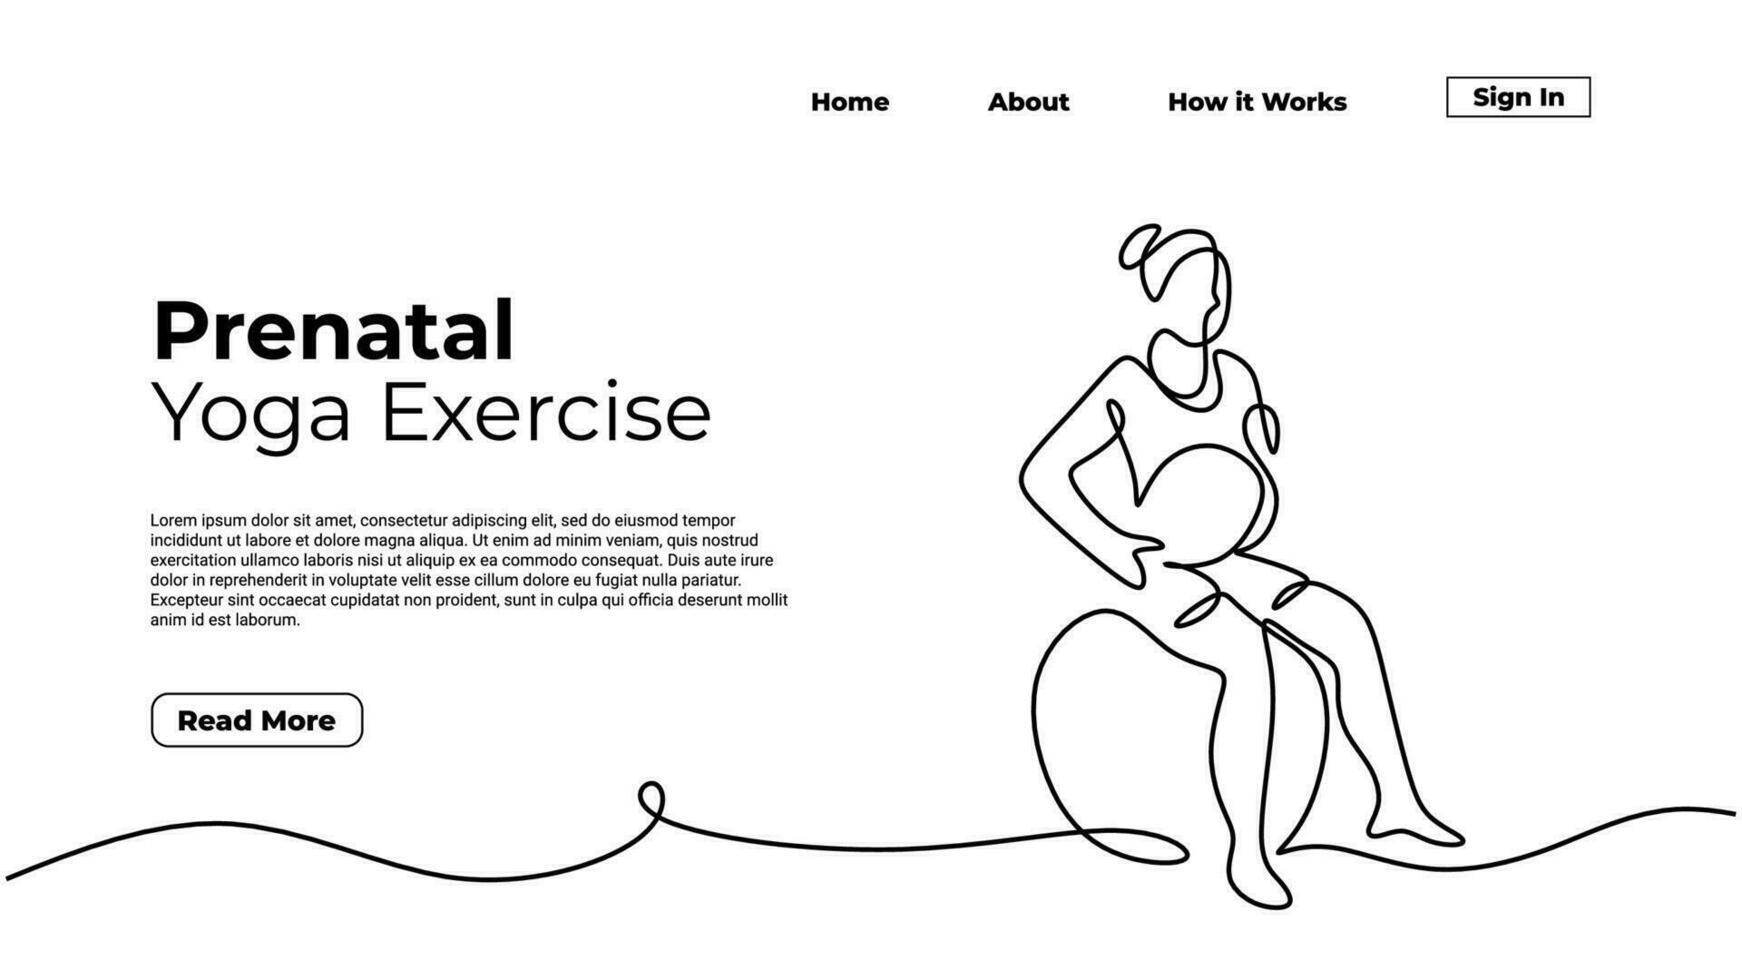 vorgeburtlich Yoga Übung, Frau tun gesund Pose während schwanger vektor